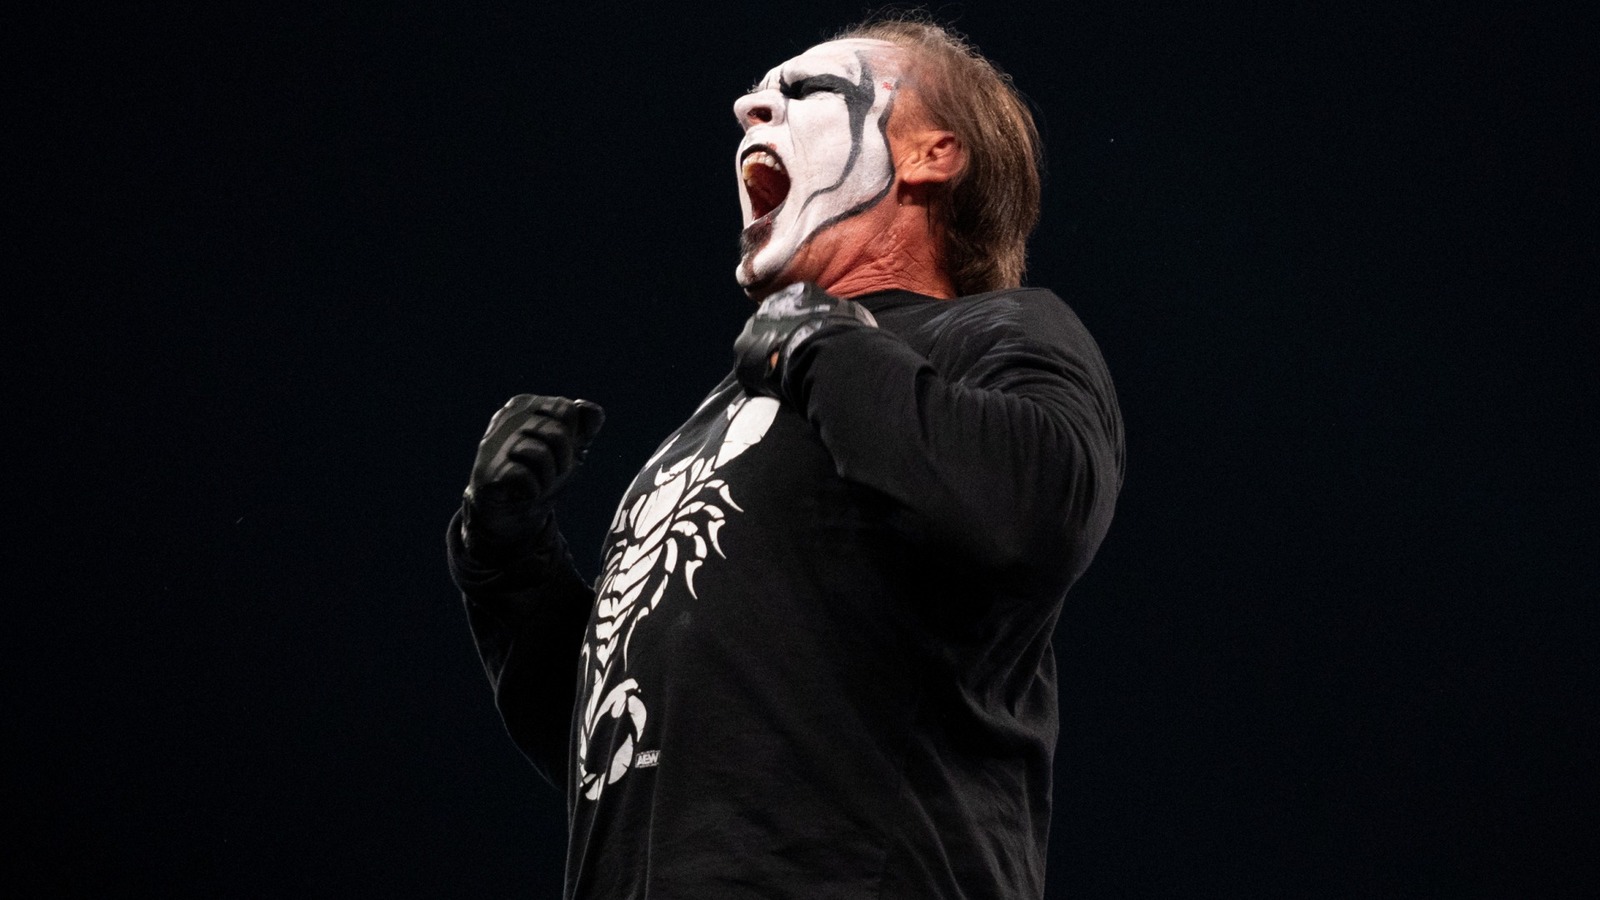 Su compañero ex alumno de WCW y estrella de AEW, Sting, no recibe el crédito que merece